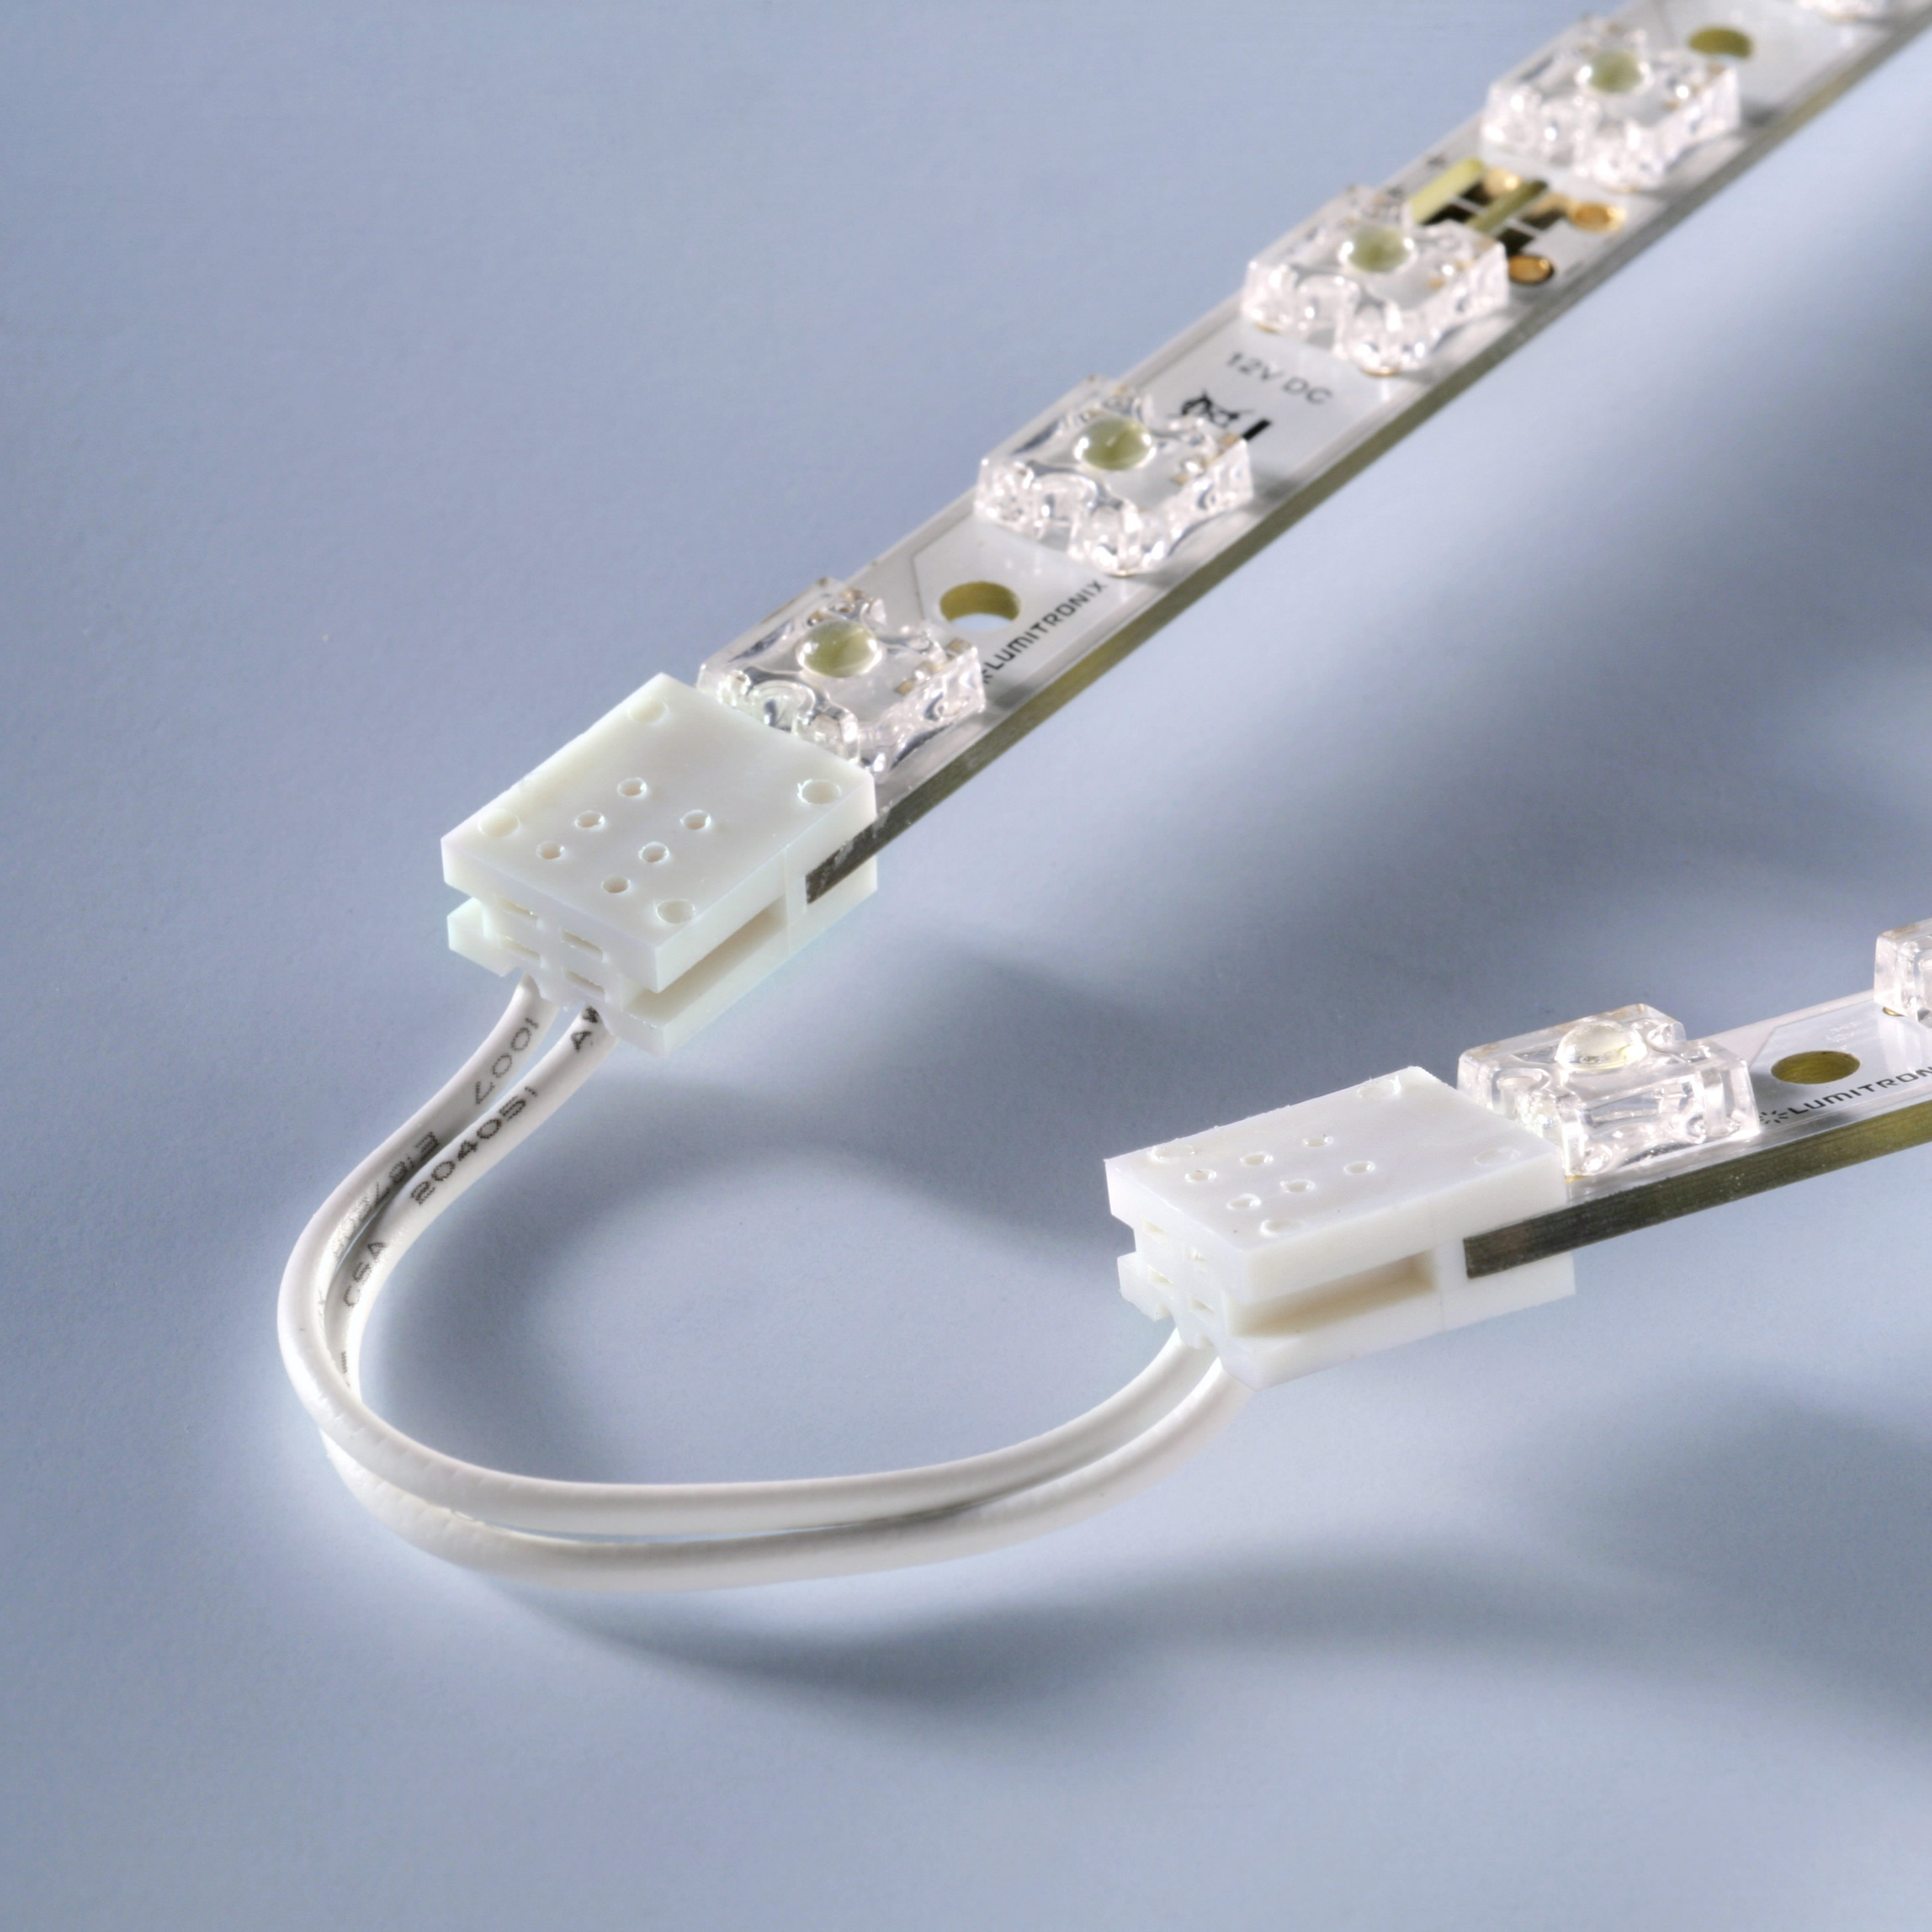 Conector con cable para Matriz LED y MultiBar longitud 6cm